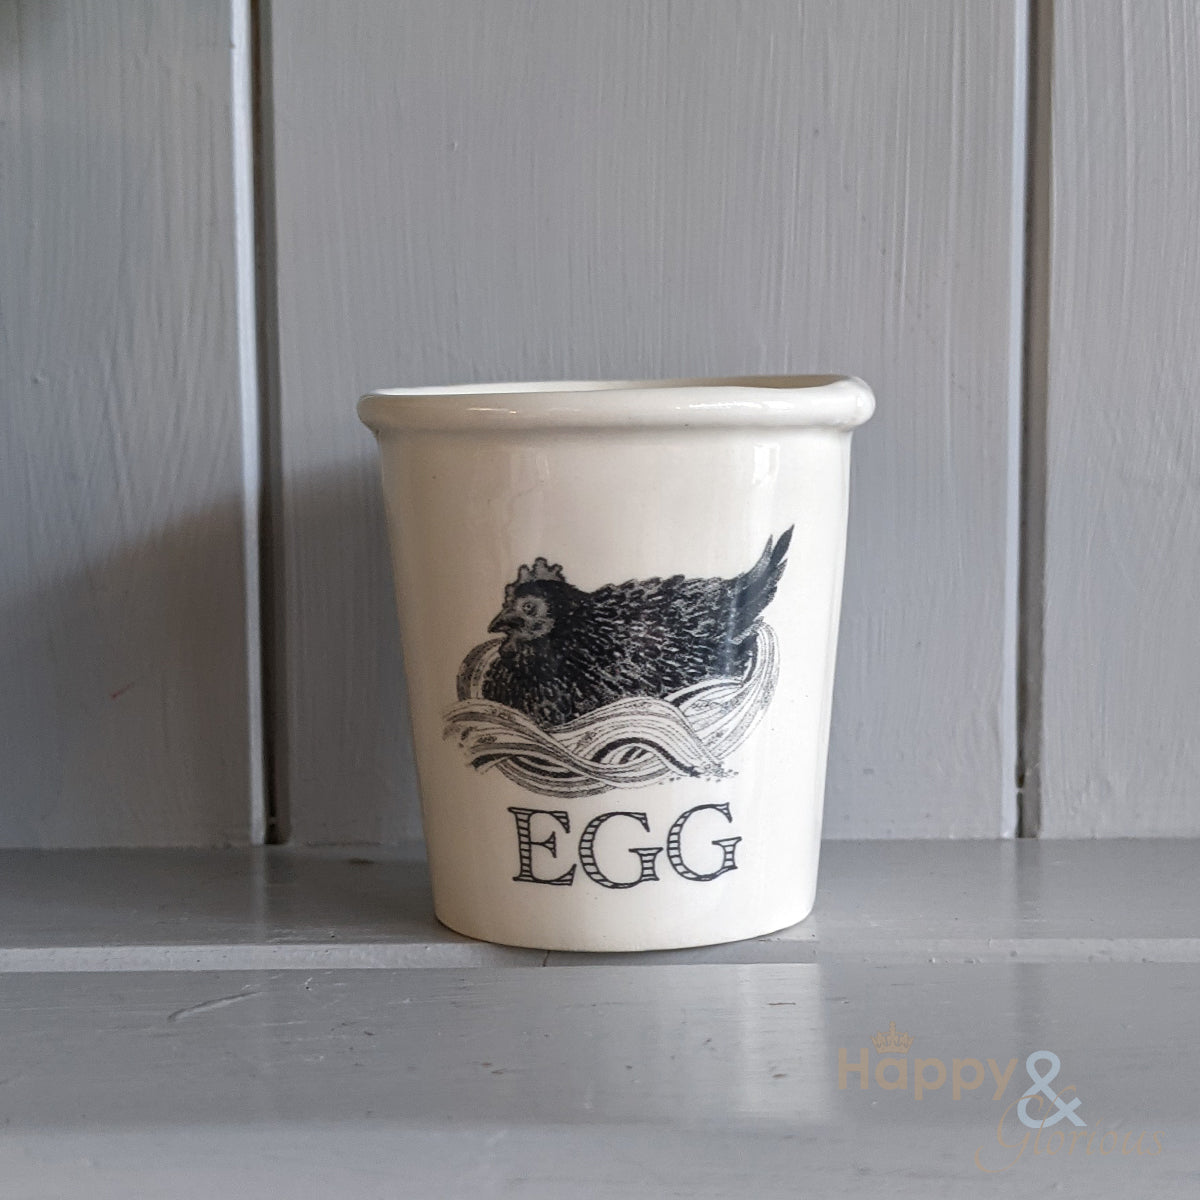 Chicken ceramic egg cup by Katie Brinsley